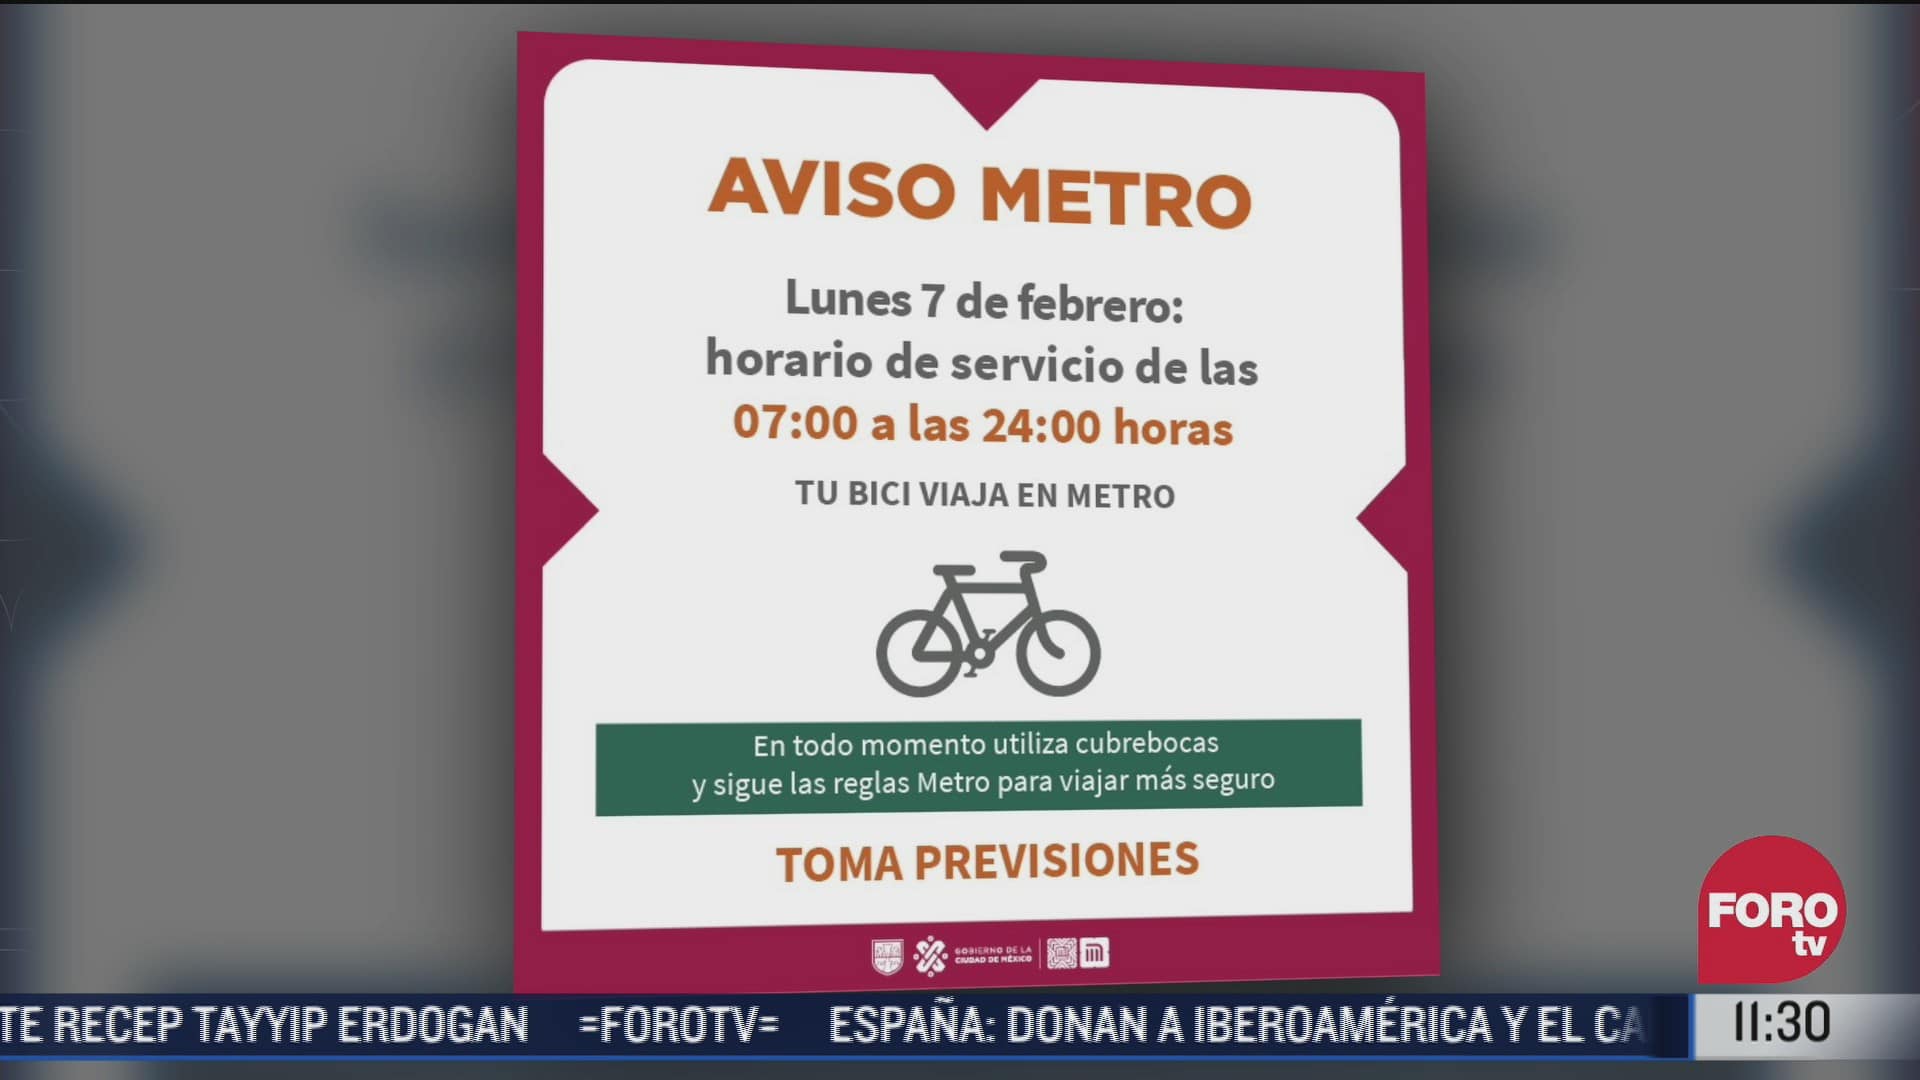 metro tendra horario de dia festivo el lunes 7 de febrero